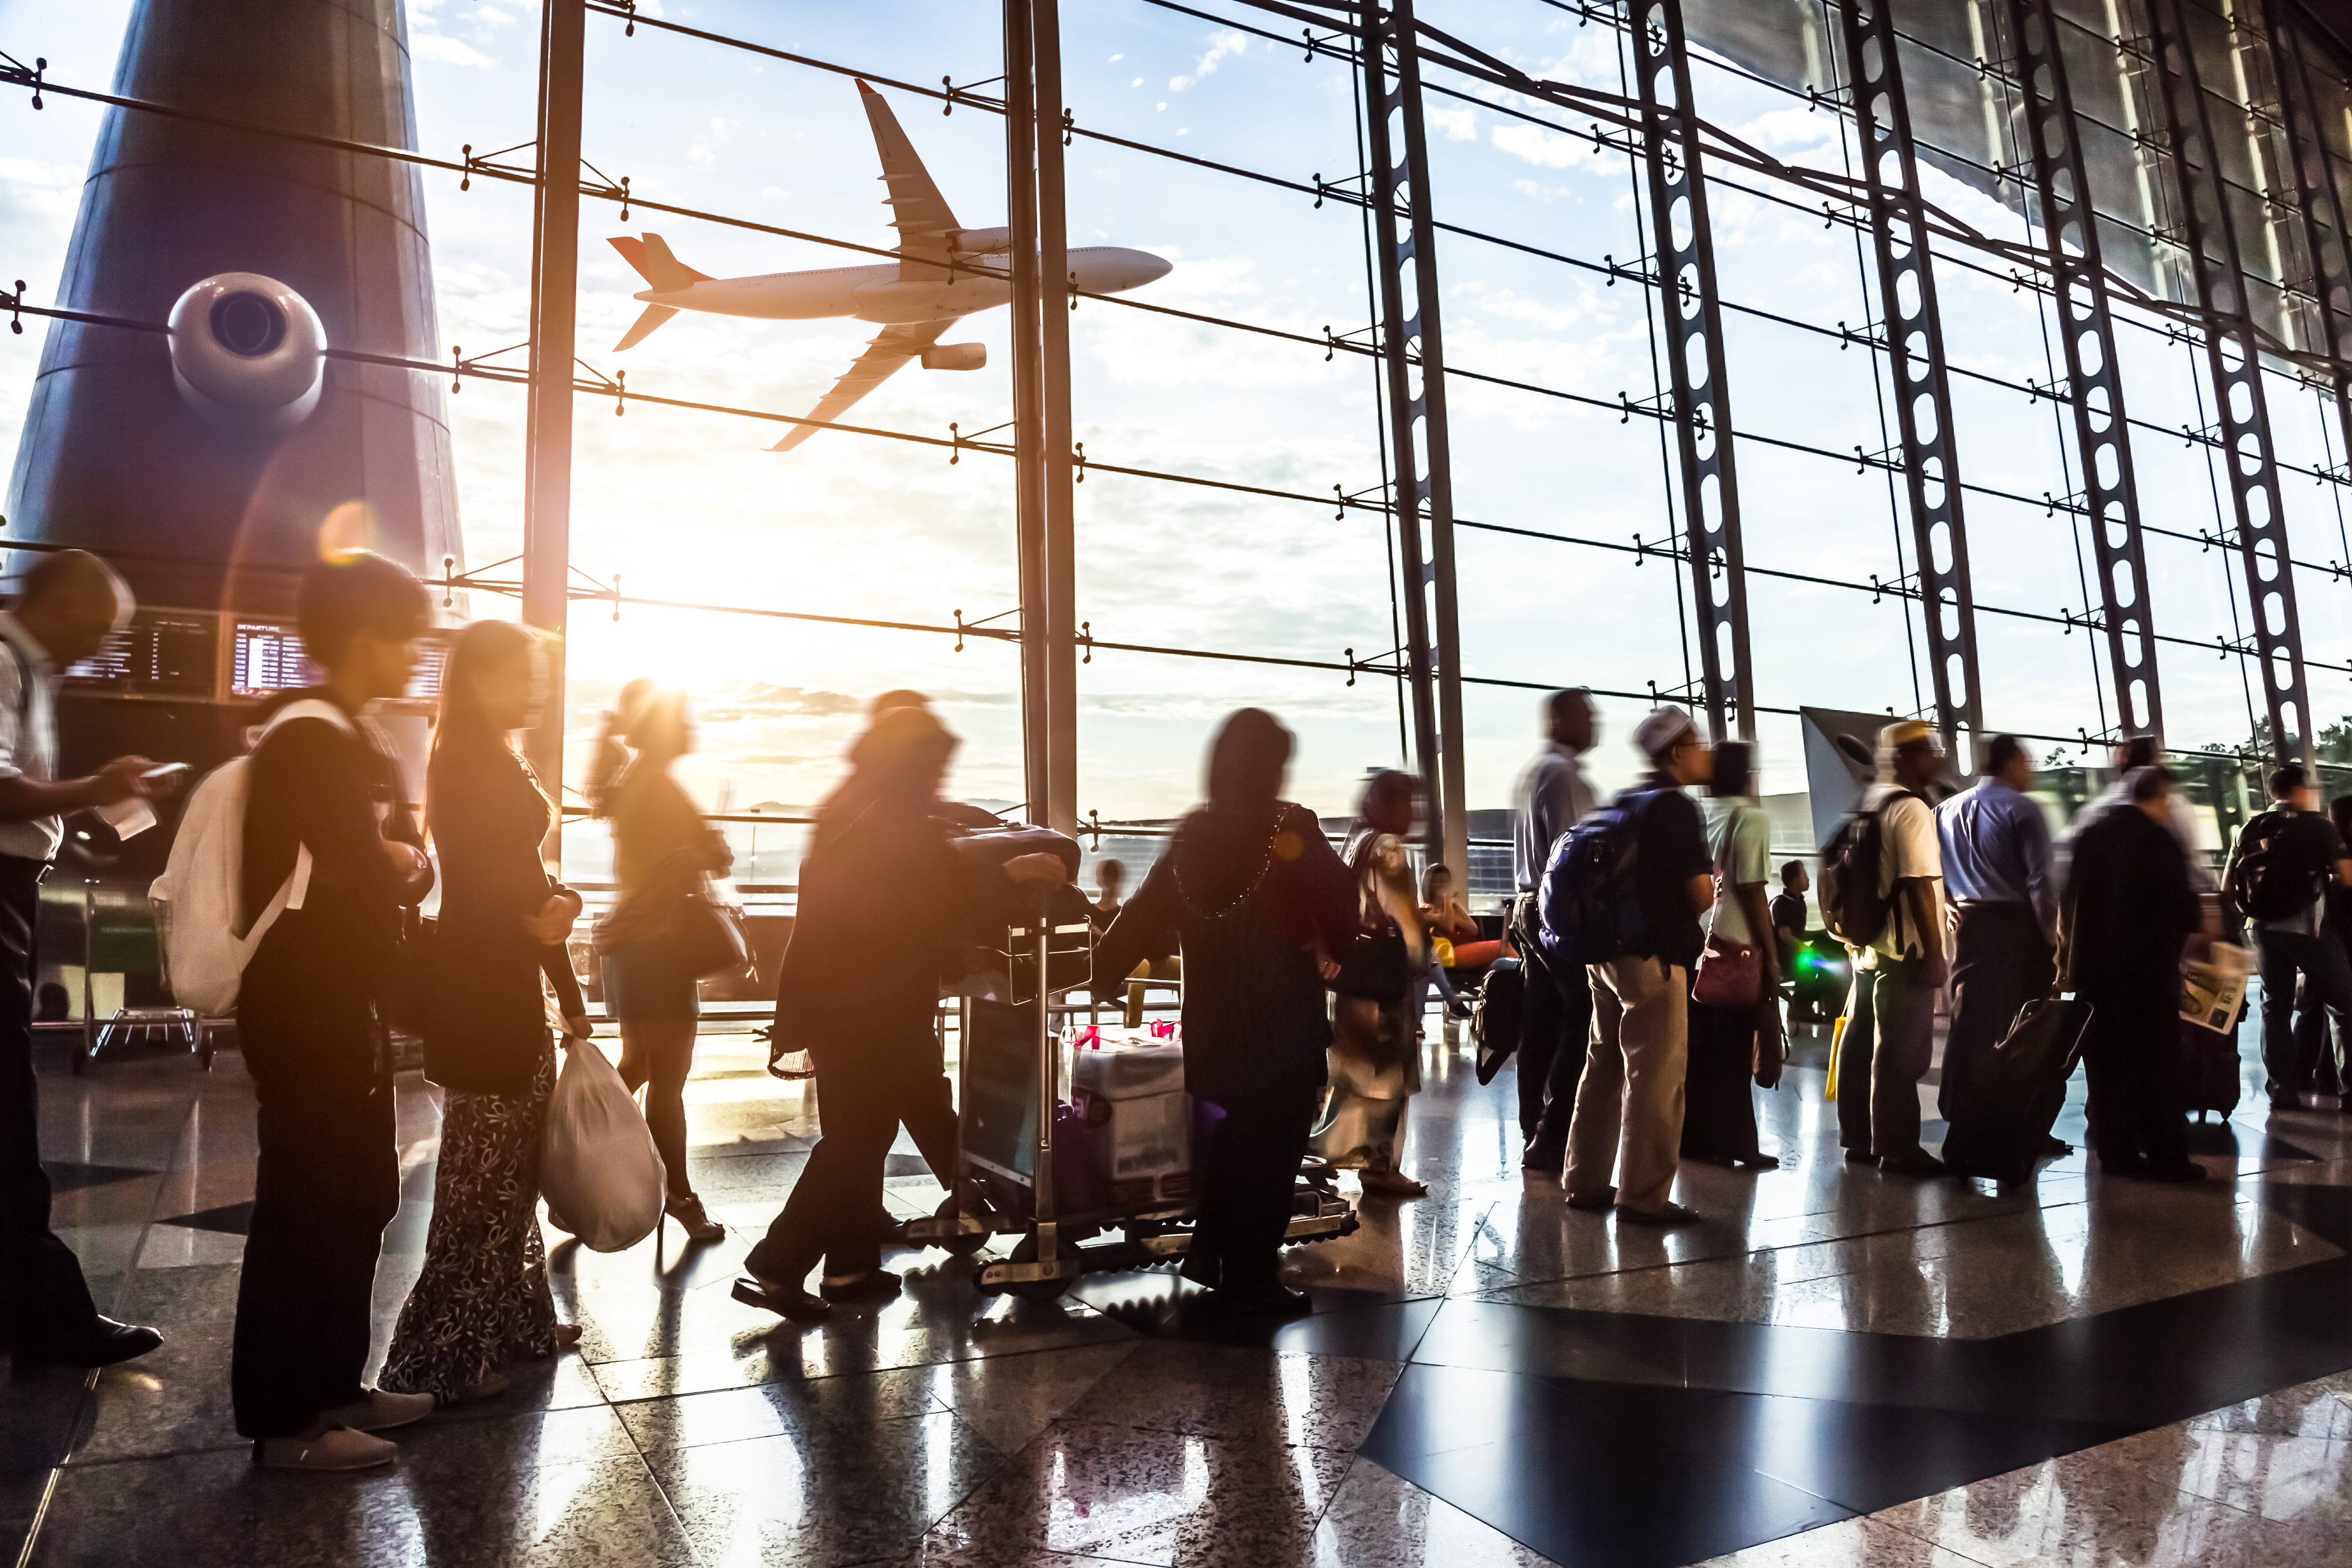 Des gens à l'aéroport | Source : Shutterstock